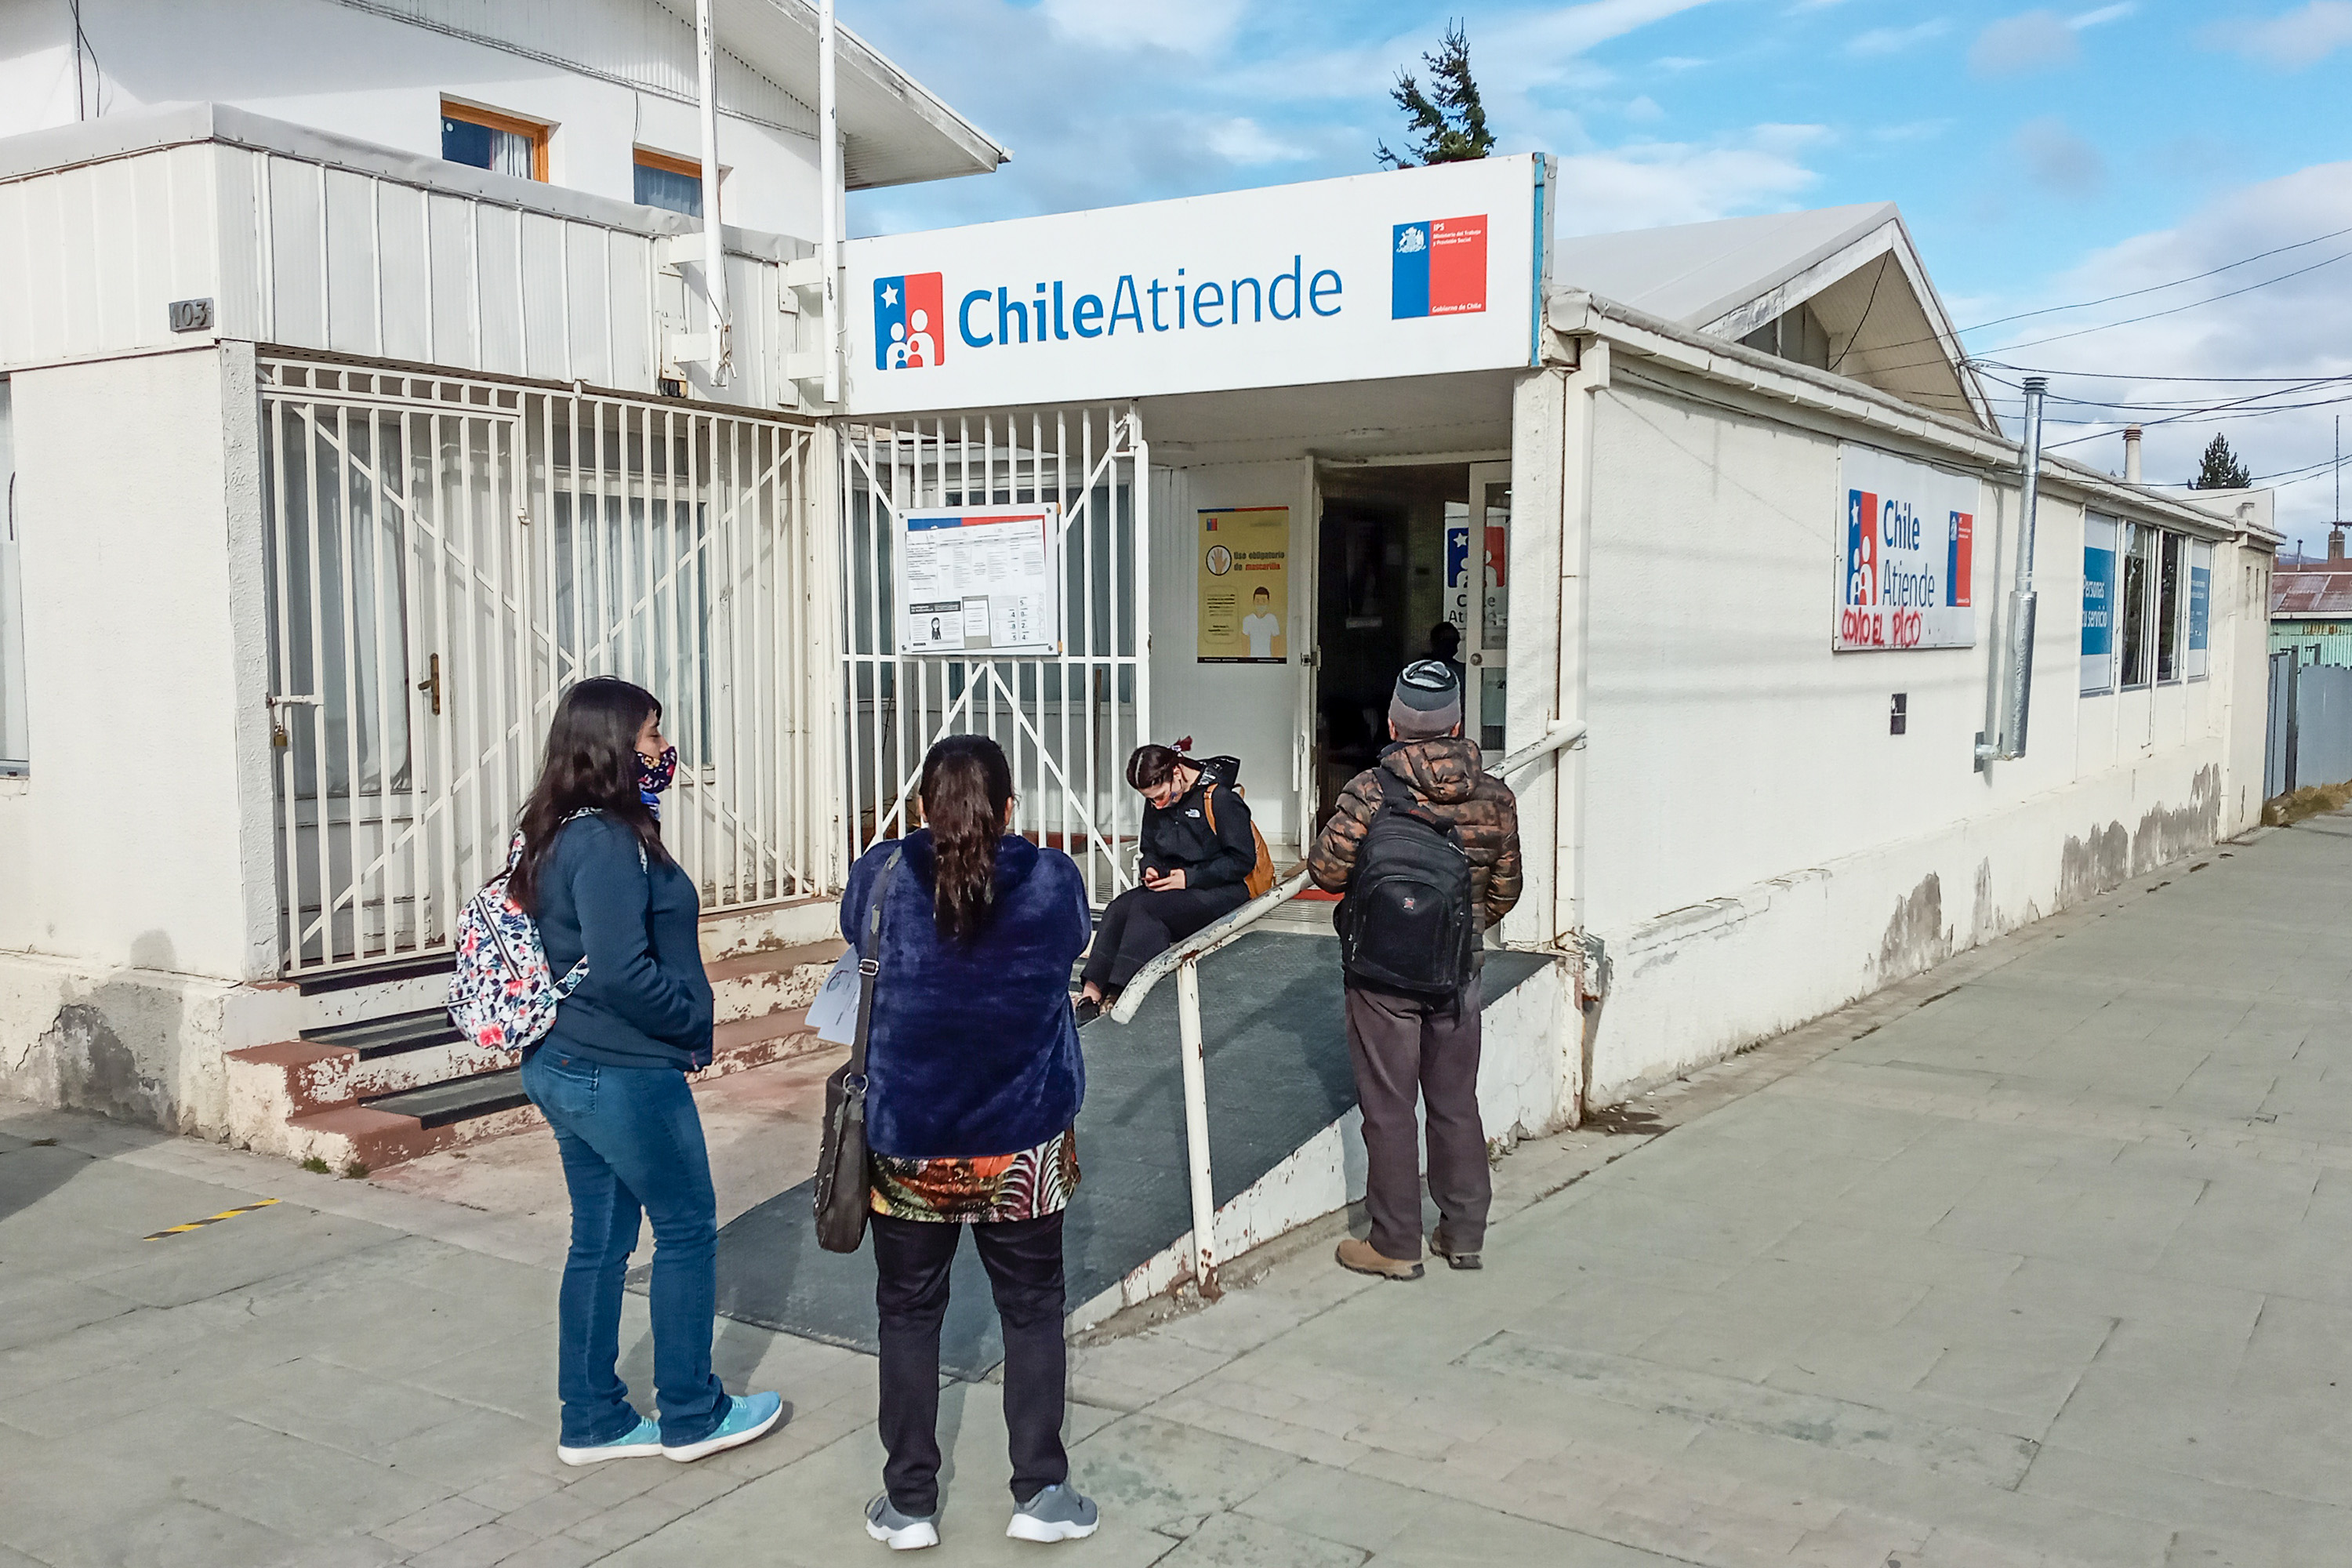 Sucursales ChileAtiende en Natales y Porvenir seguirán funcionando con normalidad tras inicio de cuarentena